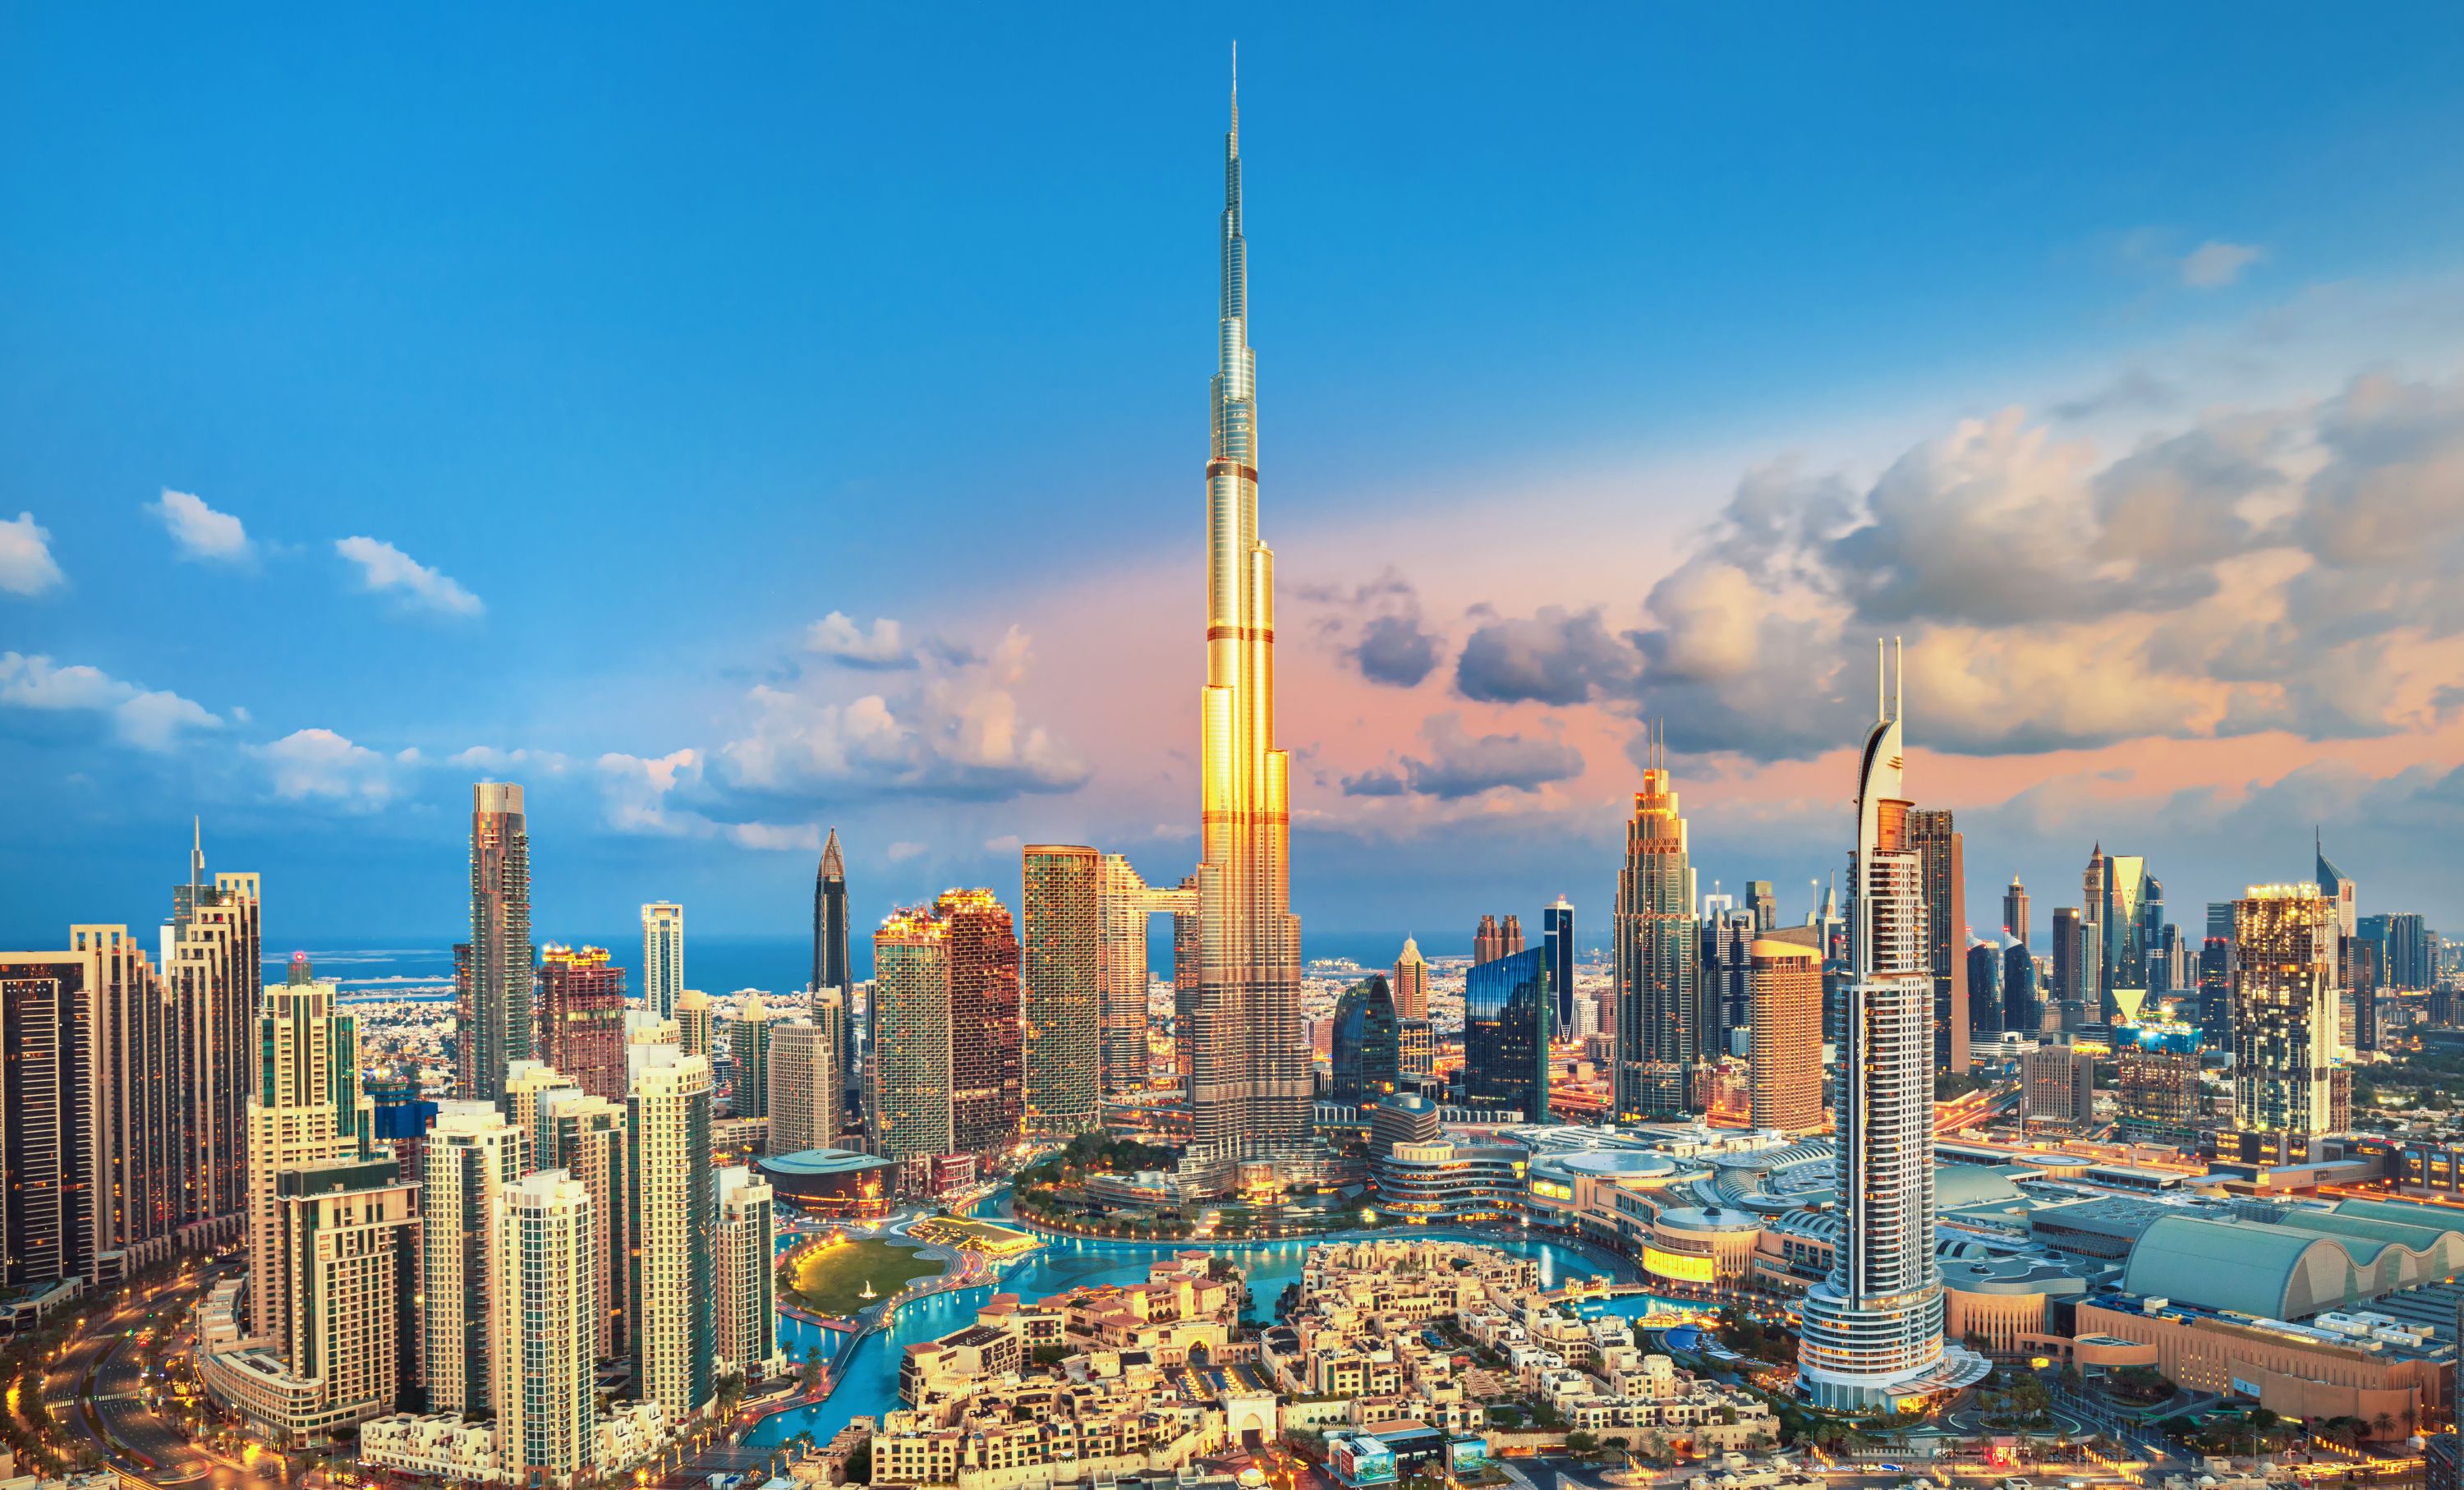 تعتبر دبي من أشهر وأغنى المدن في الإمارات العربية المتحدة، حيث إنها المدينة الأكثر اكتظاظاً بالسكان من بين الإمارات السبع التي تشكل الدولة